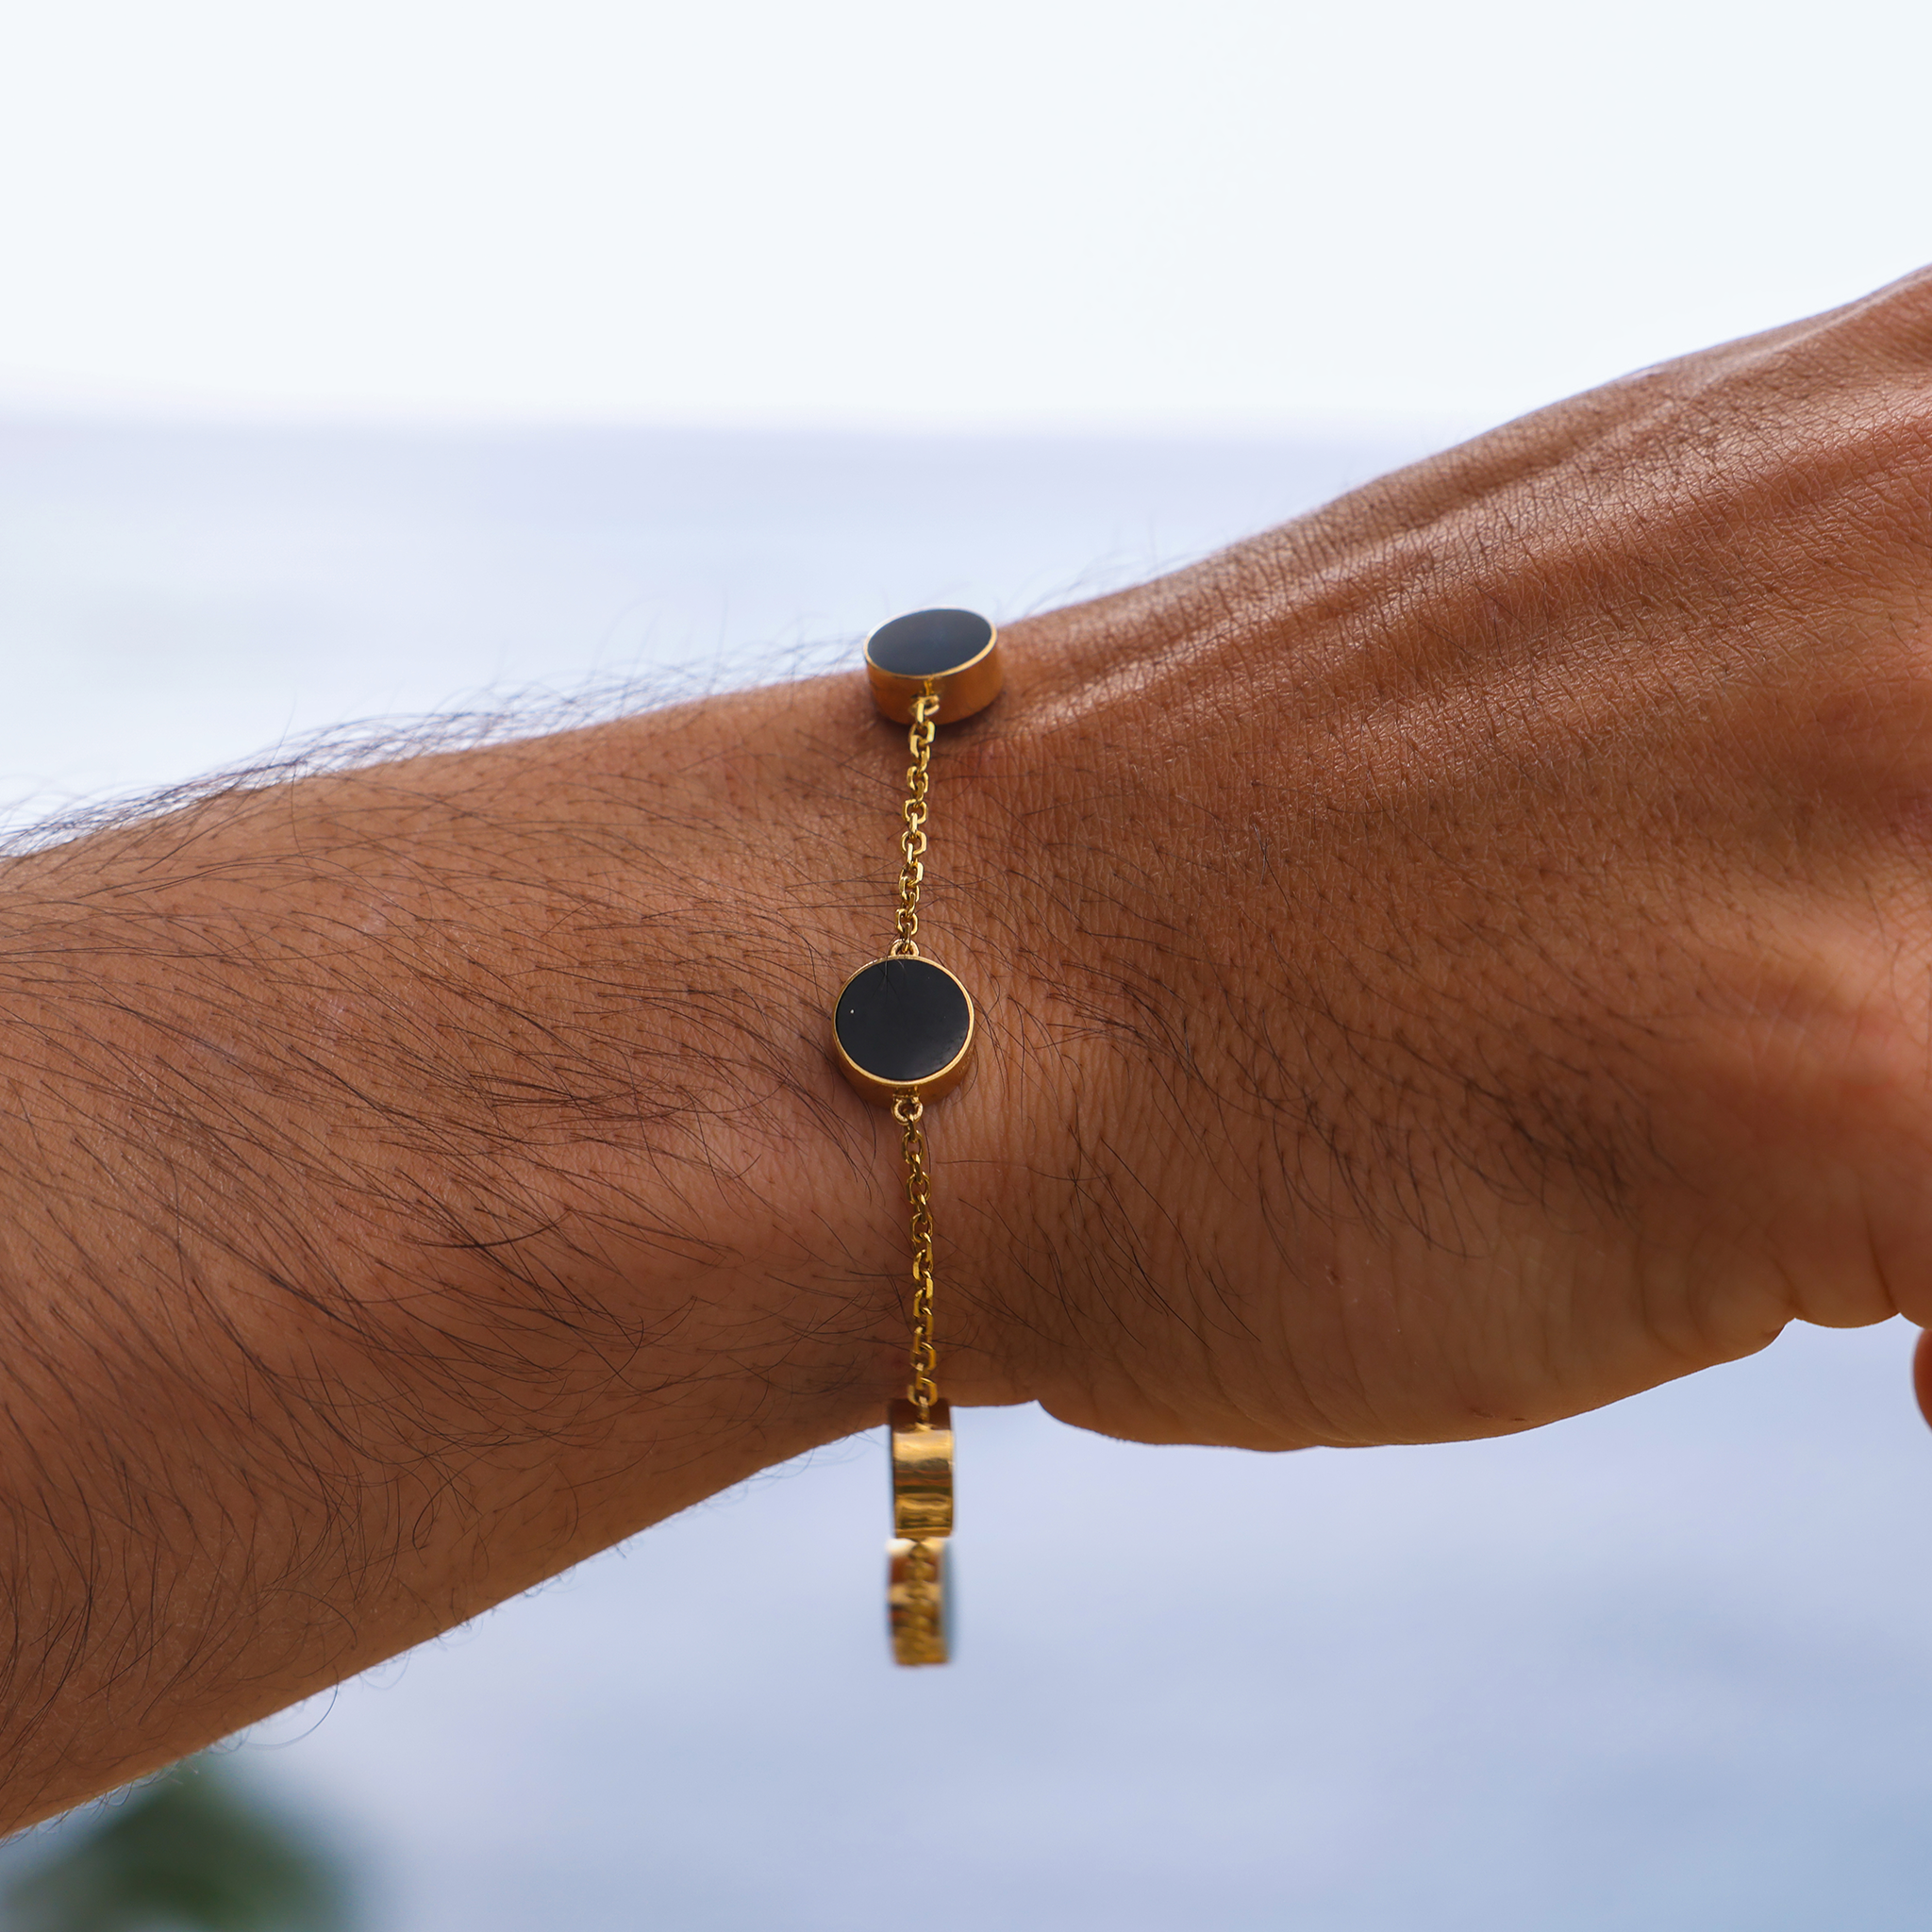 Bracelet de corail noir Eclipse en or - 9 mm - taille 7.25-8 "